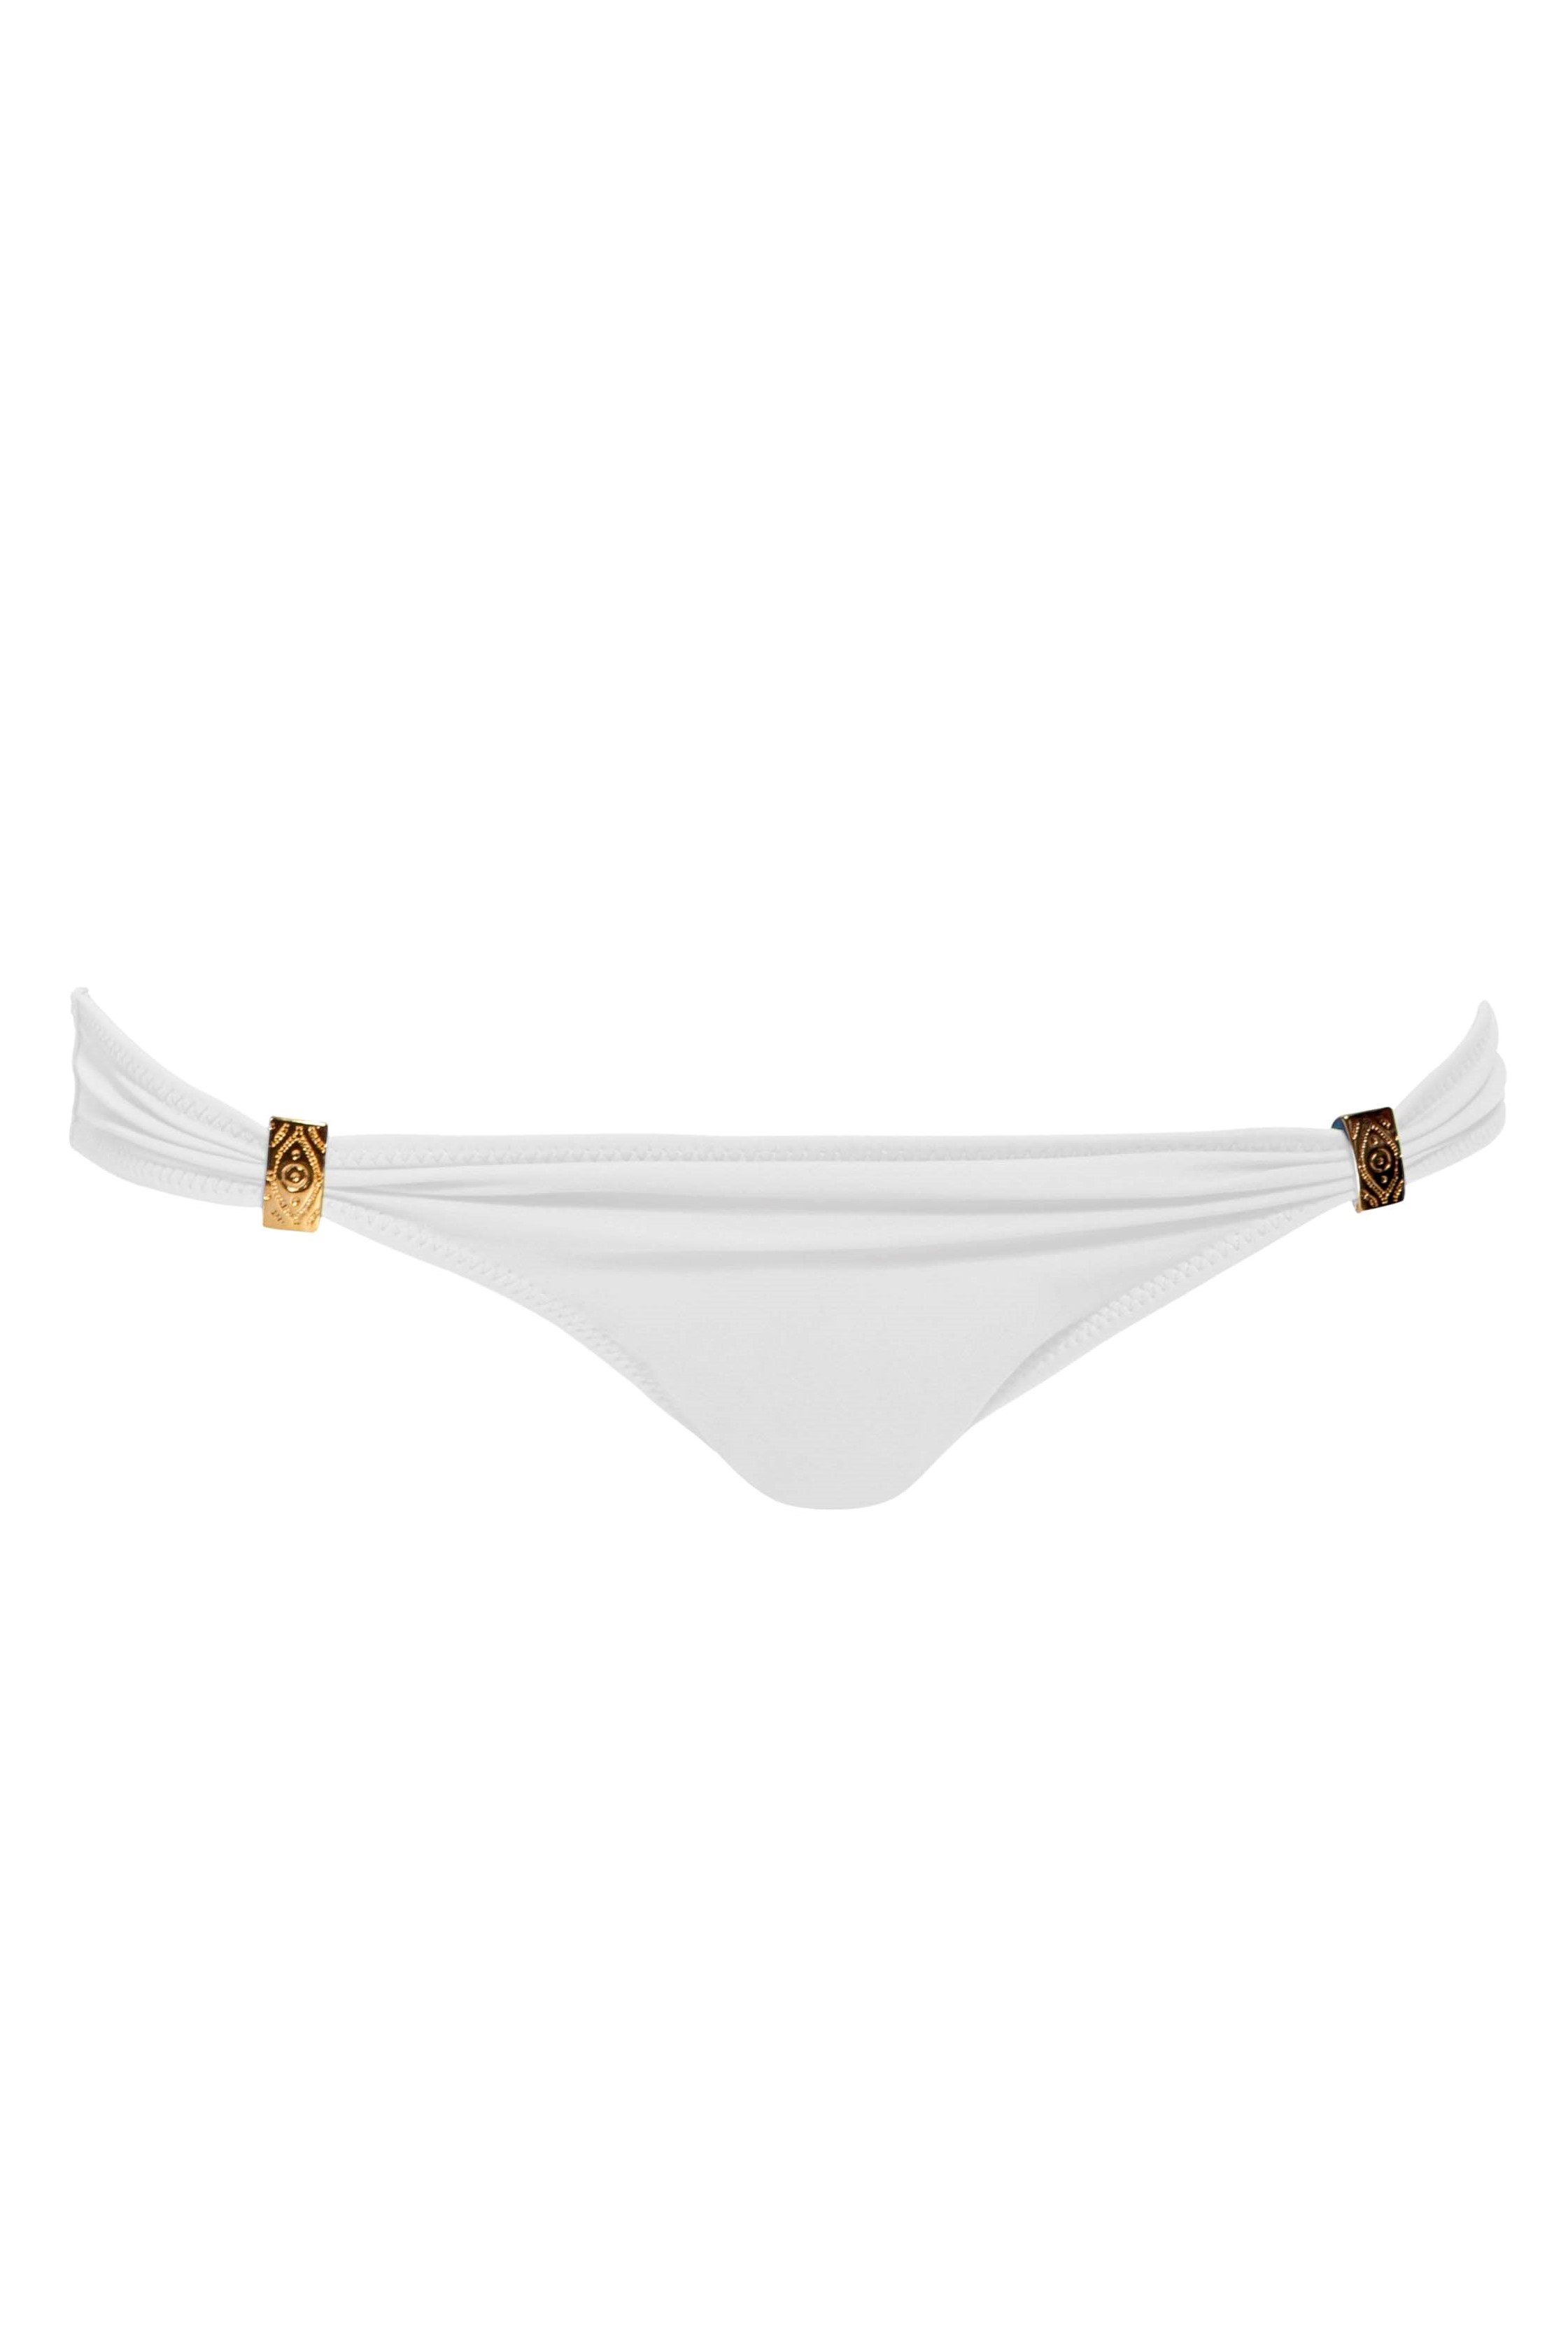 Phax White Intermedium Bikini Bottom 